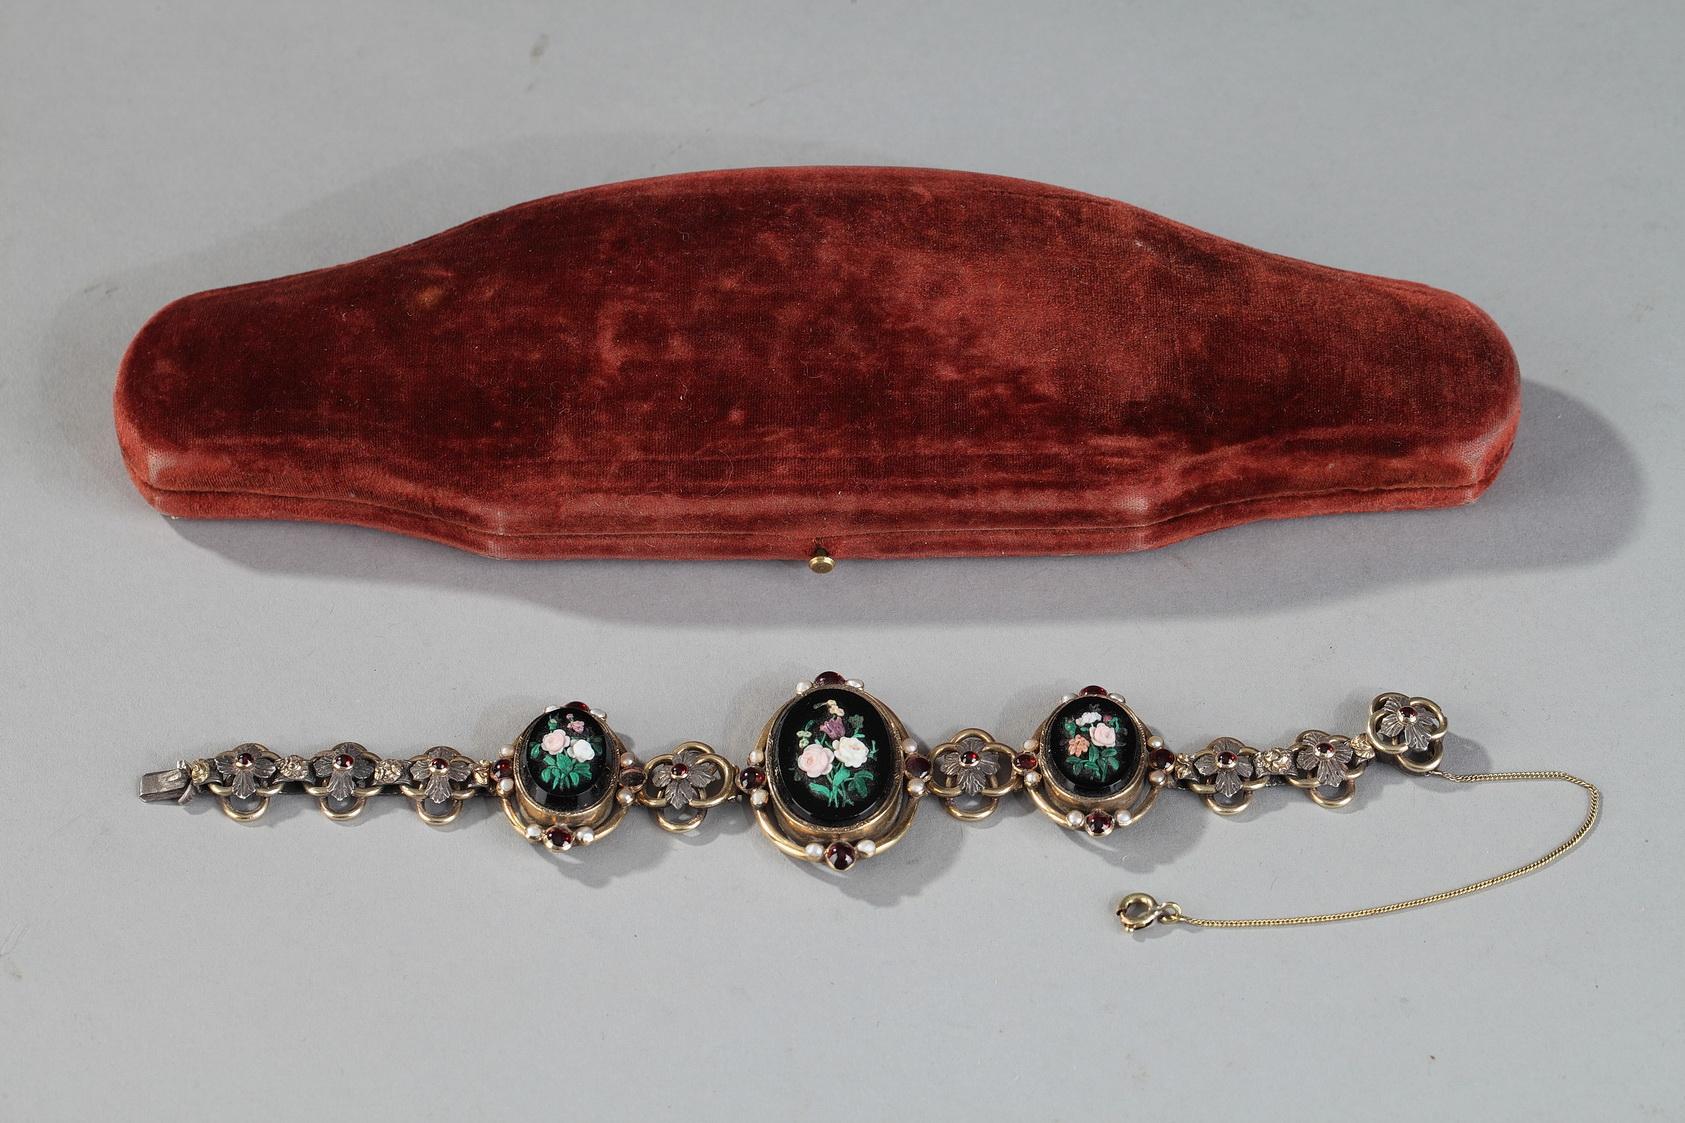 Bracelet en vermeil composé de trois médaillons décorés de micromosaïques sur fond d'onyx noir. Les micromosaïques représentent des bouquets de fleurs multicolores, et la monture est ornée de grenats et de perles. Les médaillons sont entrecoupés